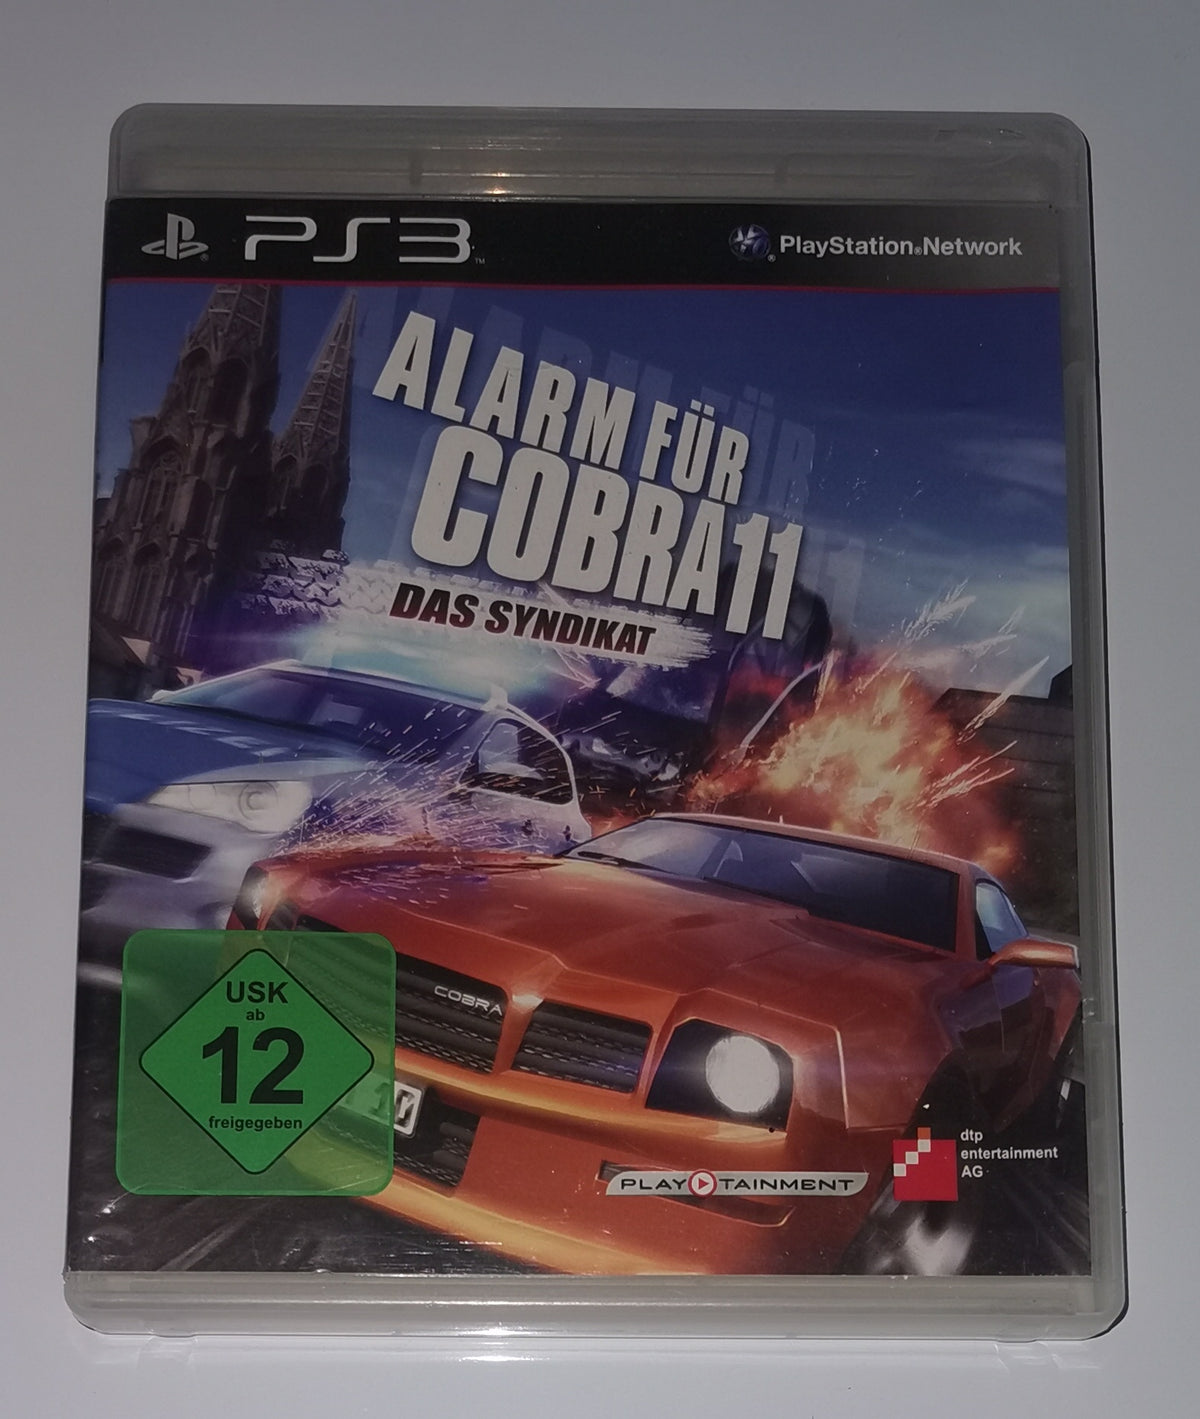 Alarm fuer Cobra 11: Das Syndikat (Playstation 3) [Gut]